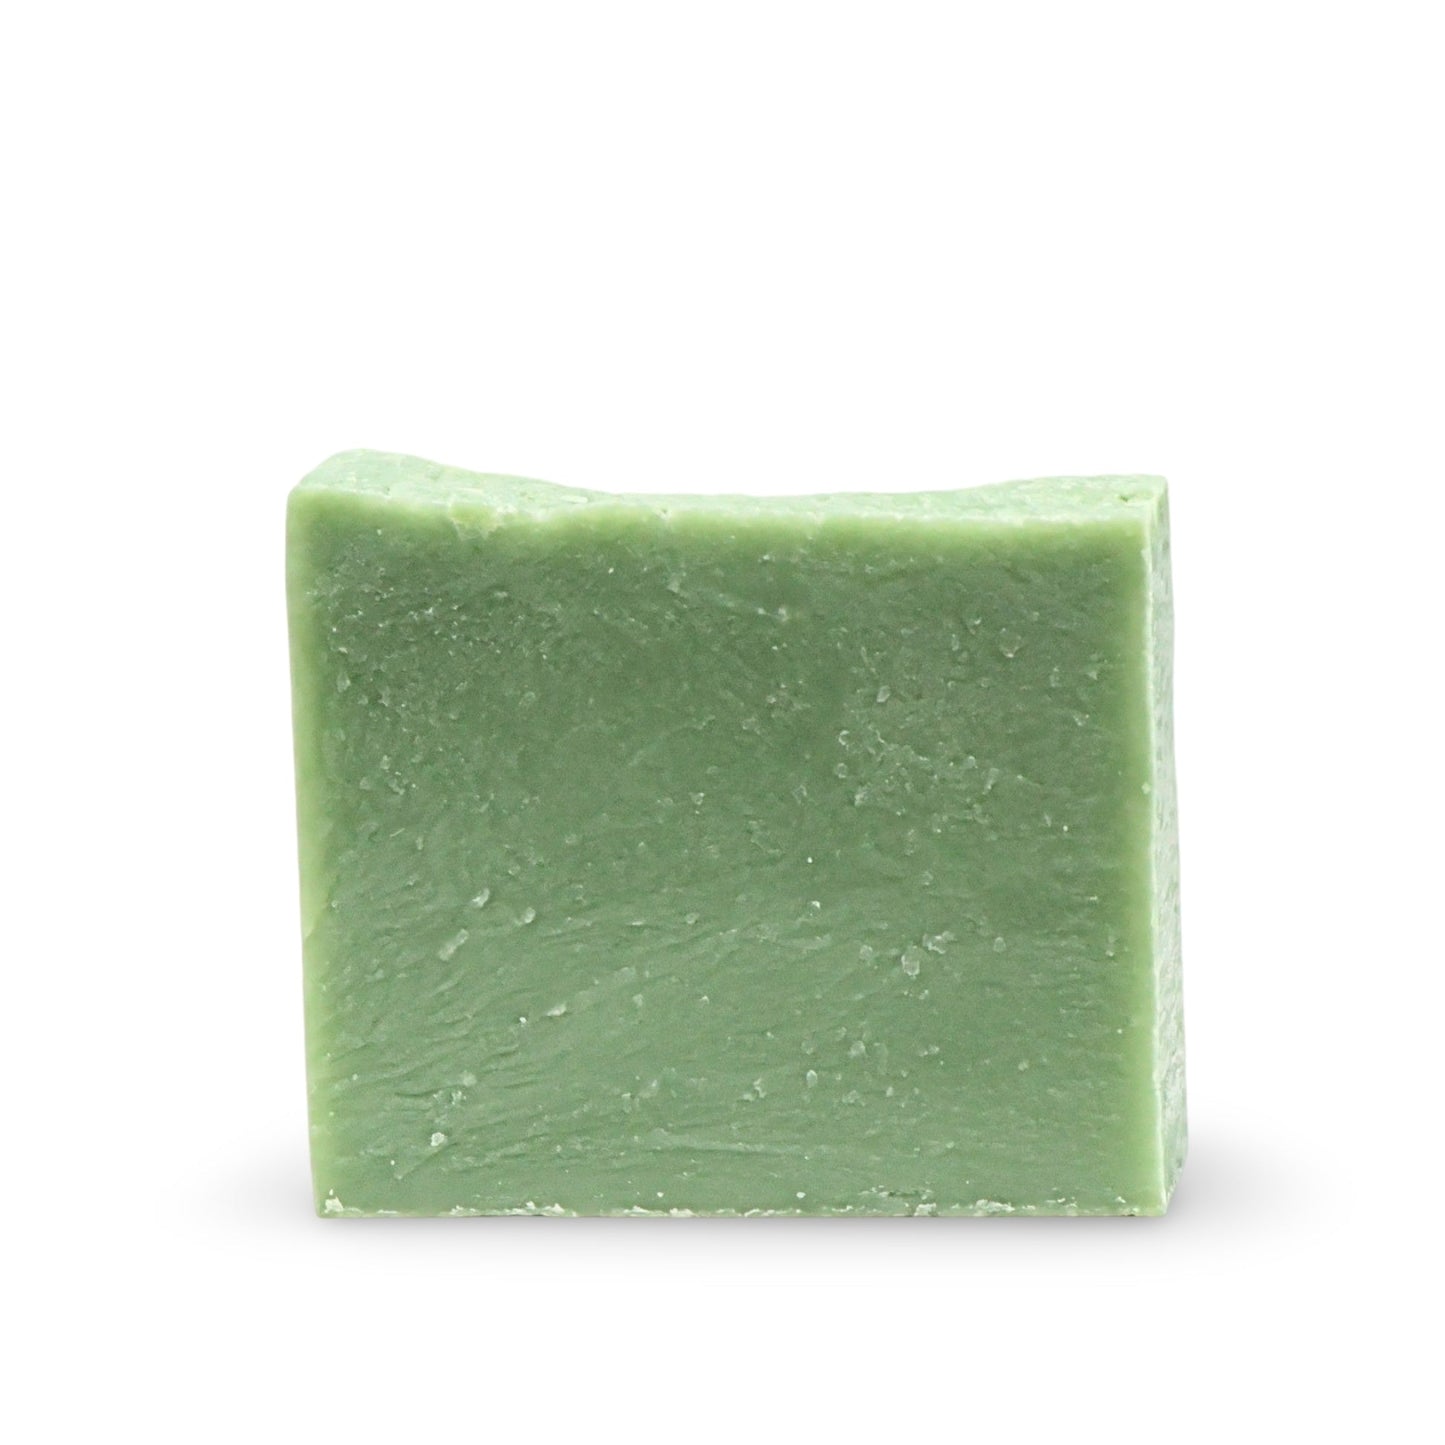 Soap Bar - Cold Process - Spearmint - 5oz